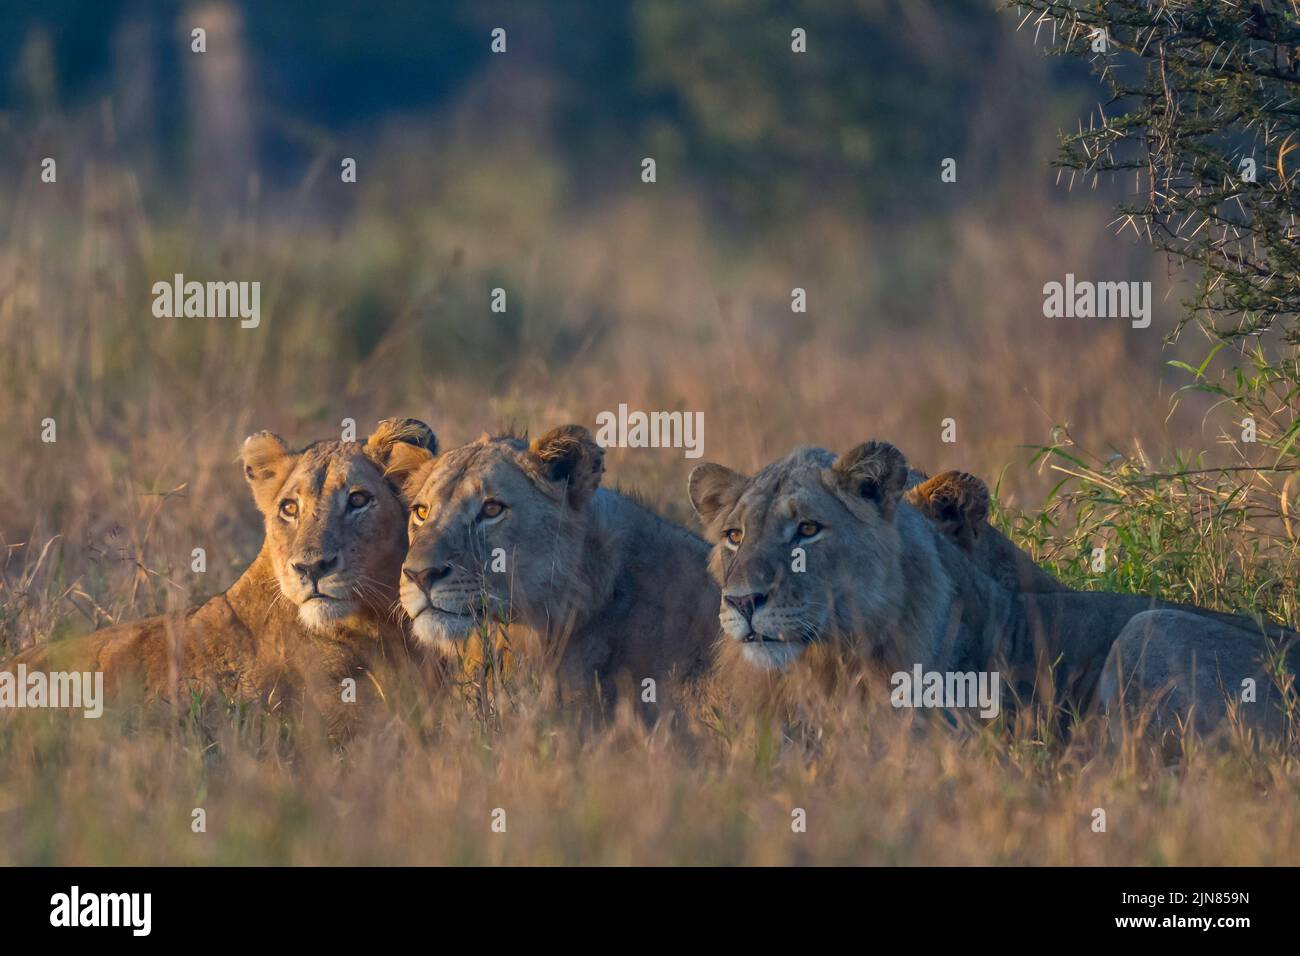 Jóvenes leones tendidos en espera a primera hora de la tarde al comienzo de una caza. Foto de stock